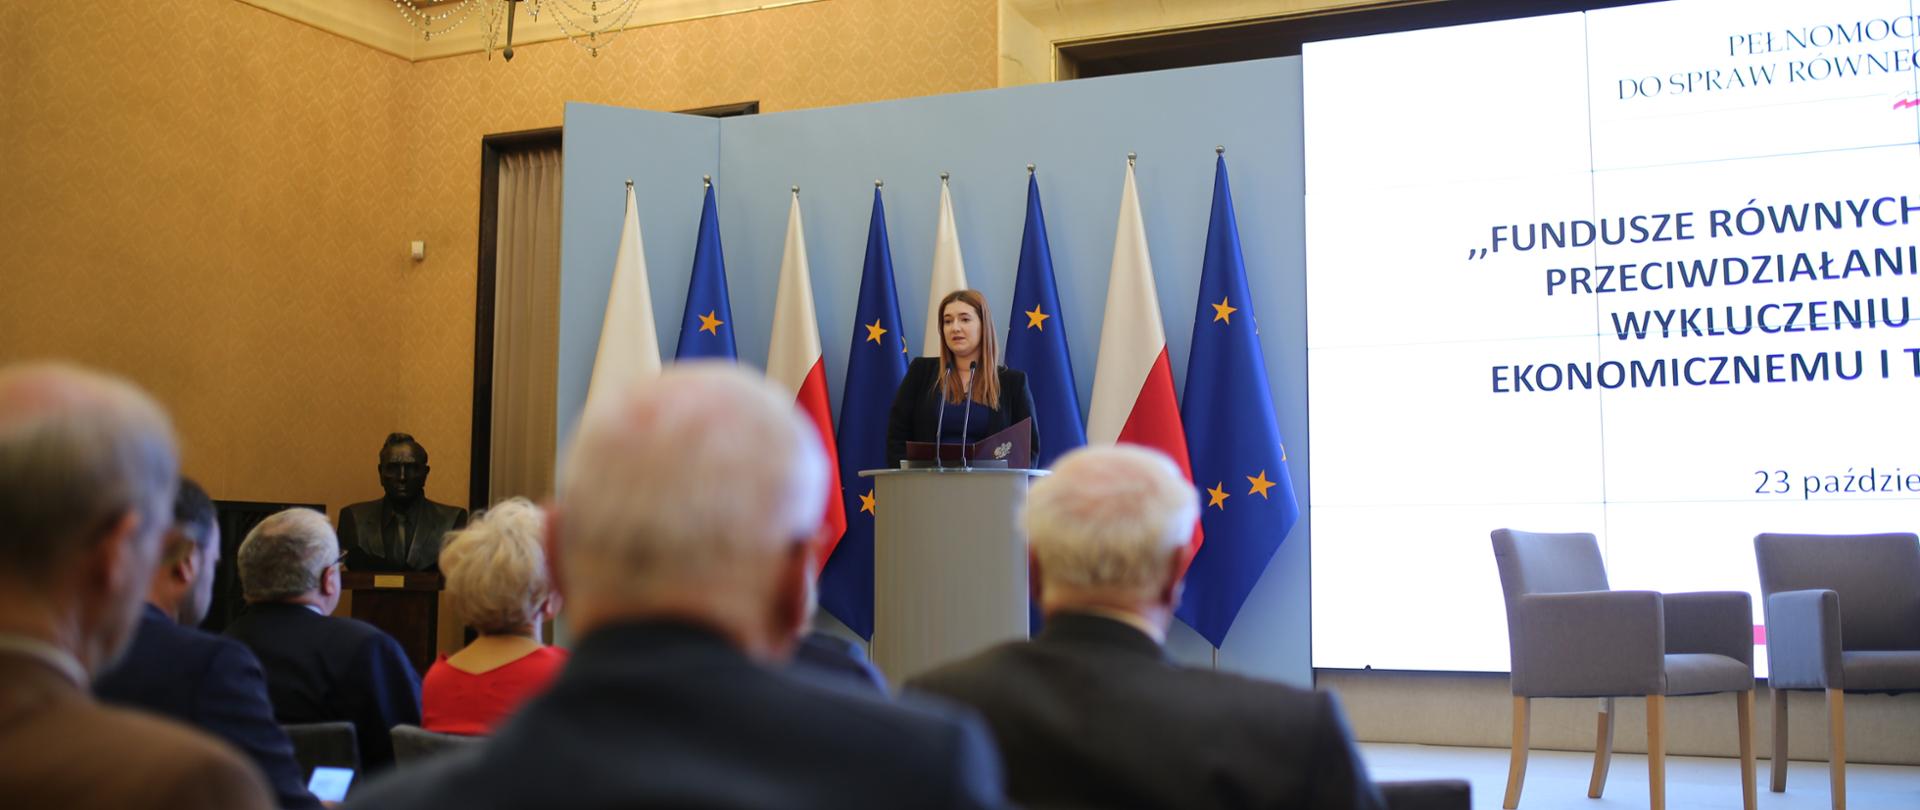 Na scenie w mównicy stoi wiceminister Anna Gembicka. Za nią flagi polskie i UE. Obok na ekranie wyświetla się napis: ""Fundusze równych szans sposobem na przeciwdziałanie dyskryminacji i wykluczeniu społecznemu, ekonomicznemu i technologicznemu". Przodem do sceny w rzędach siedzą na krzesłach uczestnicy konferencji.